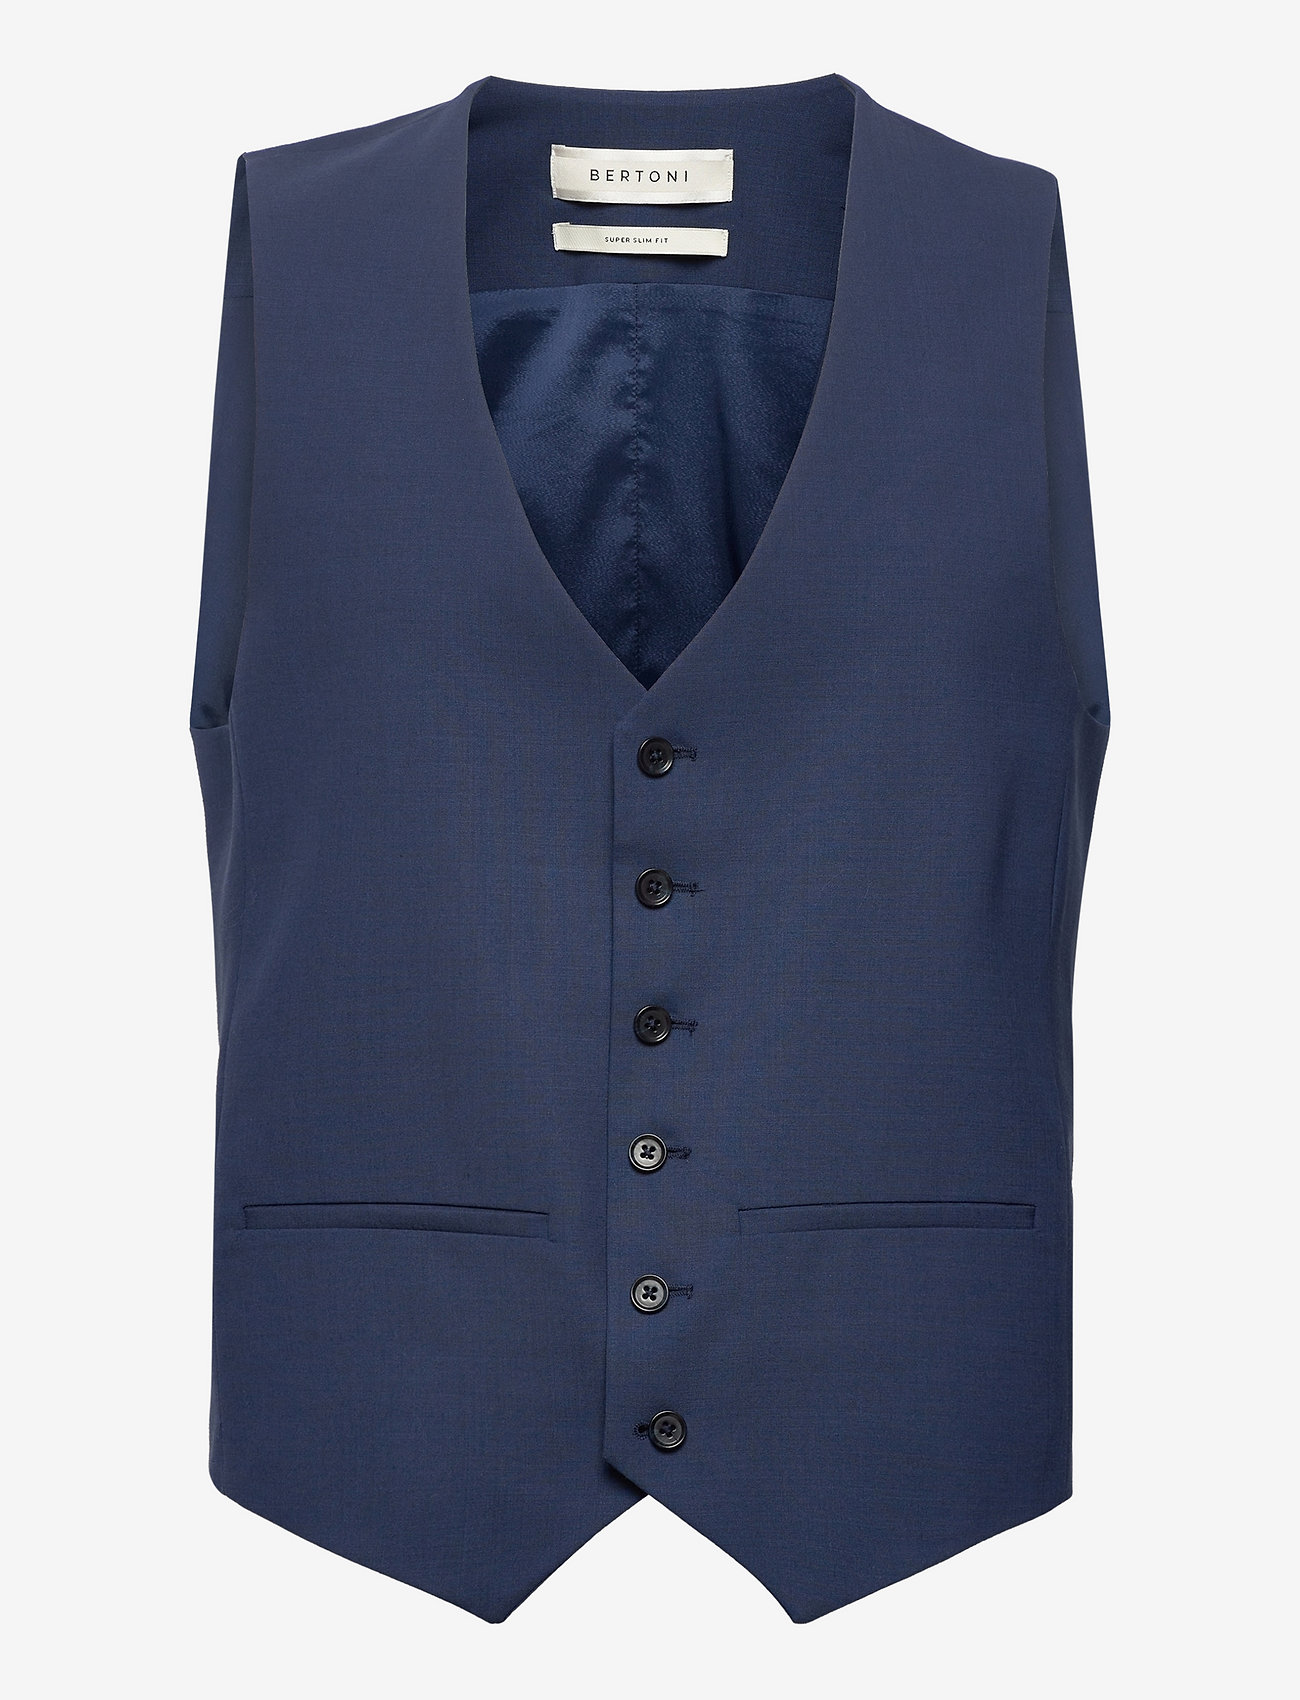 kryds Det er det heldige dele Bertoni Torkildsen Waistcoat (740 Dress Blue), 374.63 kr | Stort udvalg af  designer mærker | Booztlet.com